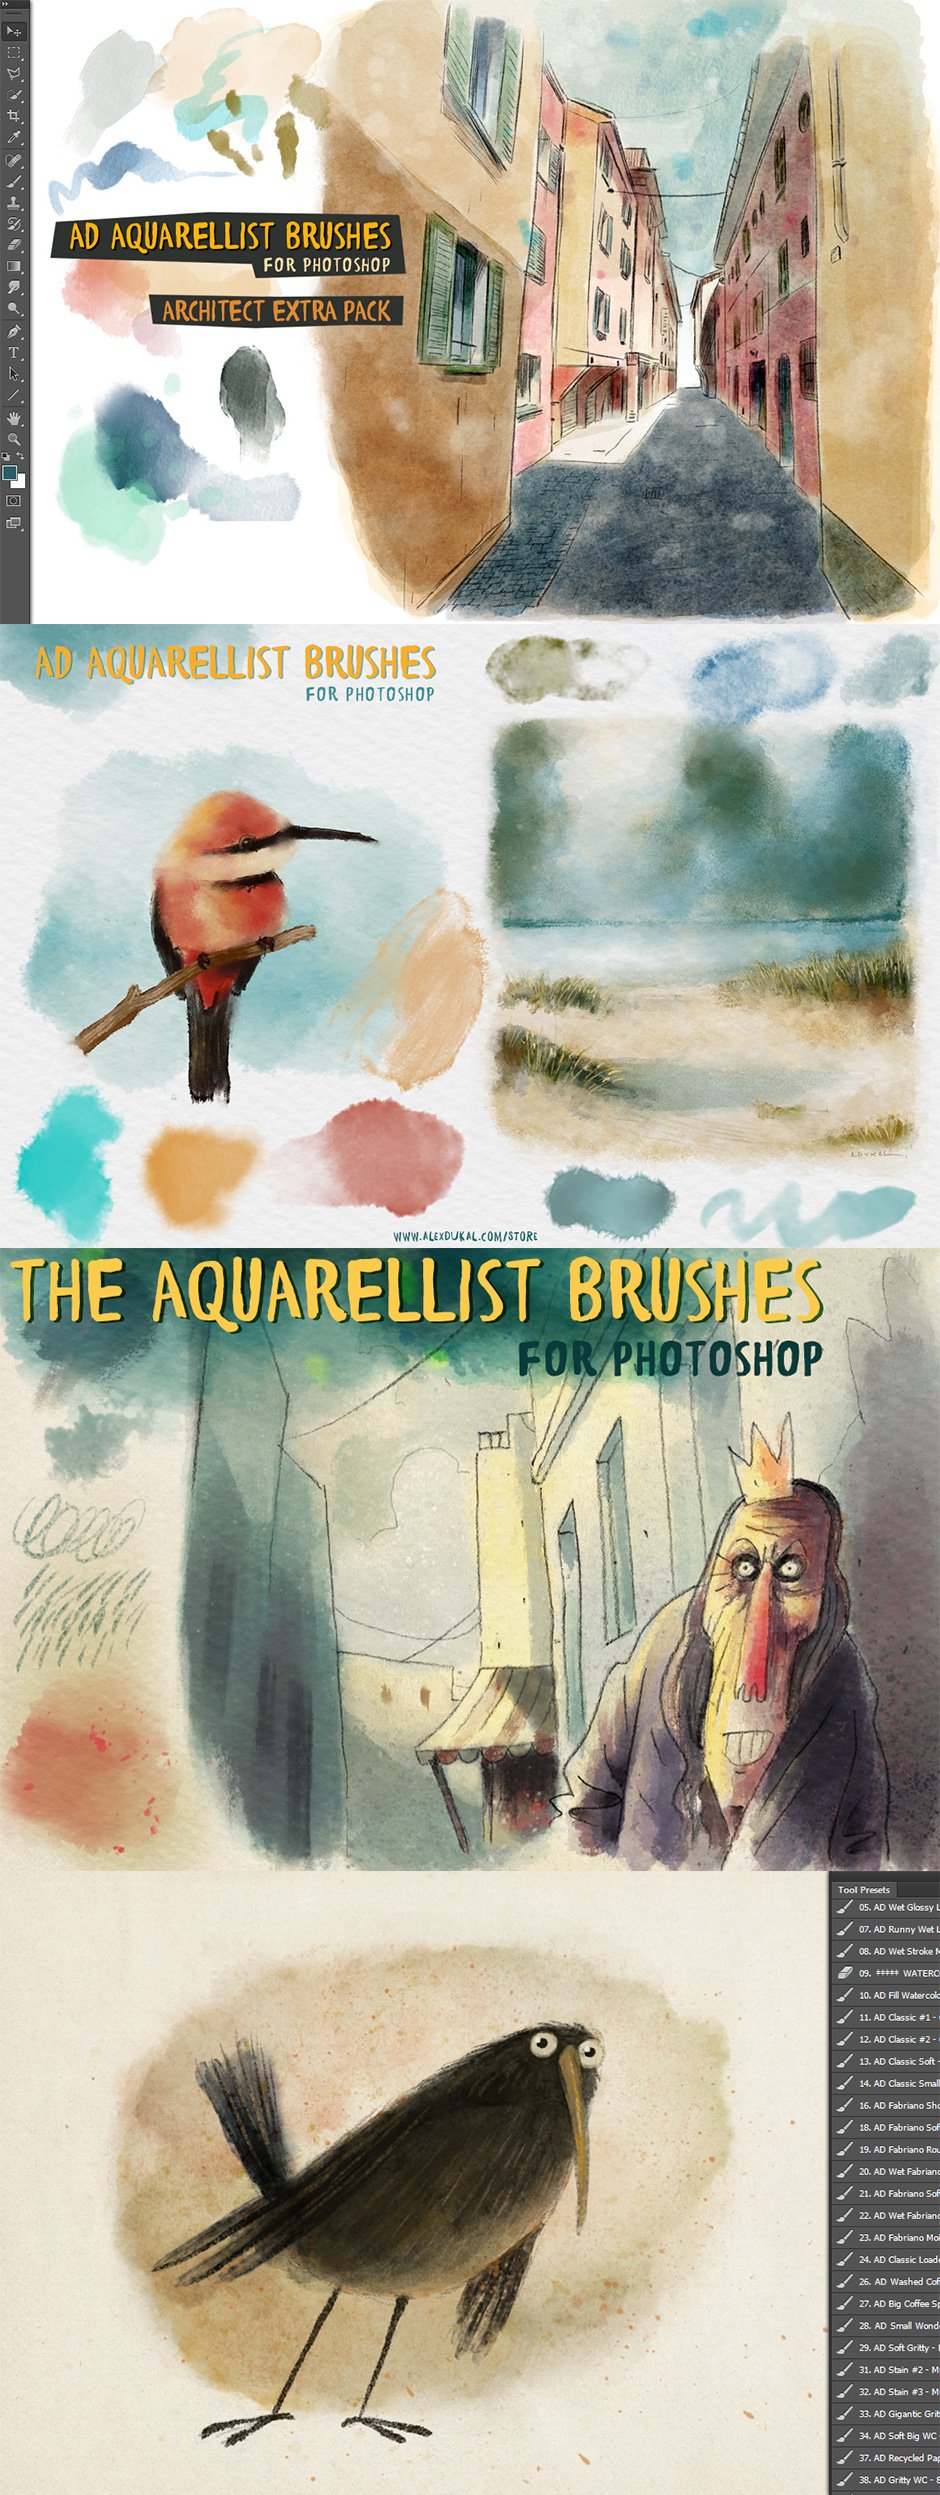 The Aquarellist Brushes